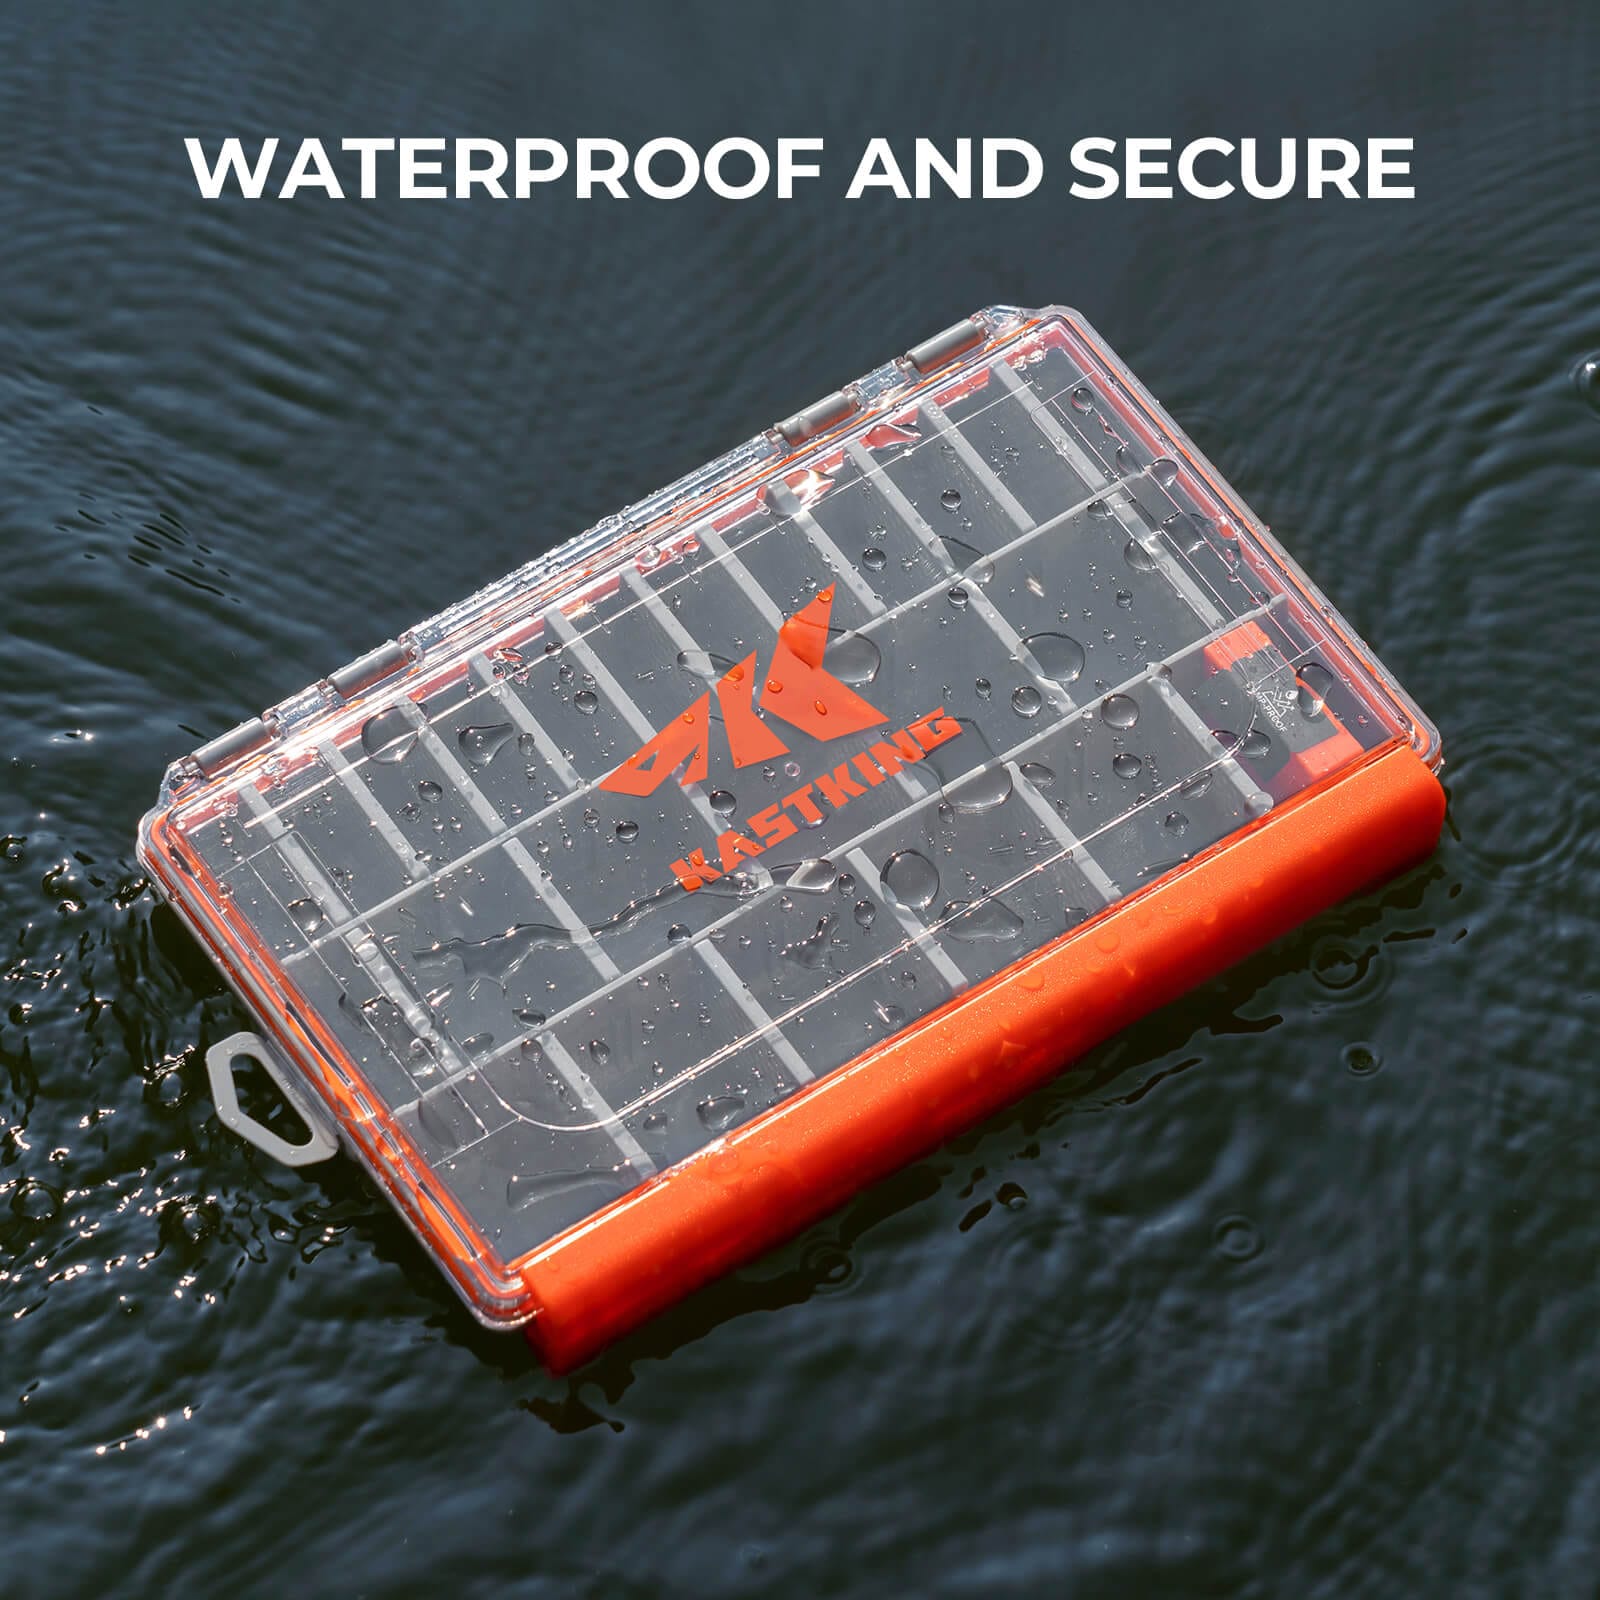 KastKing HyperSeal Waterproof Tackle Box